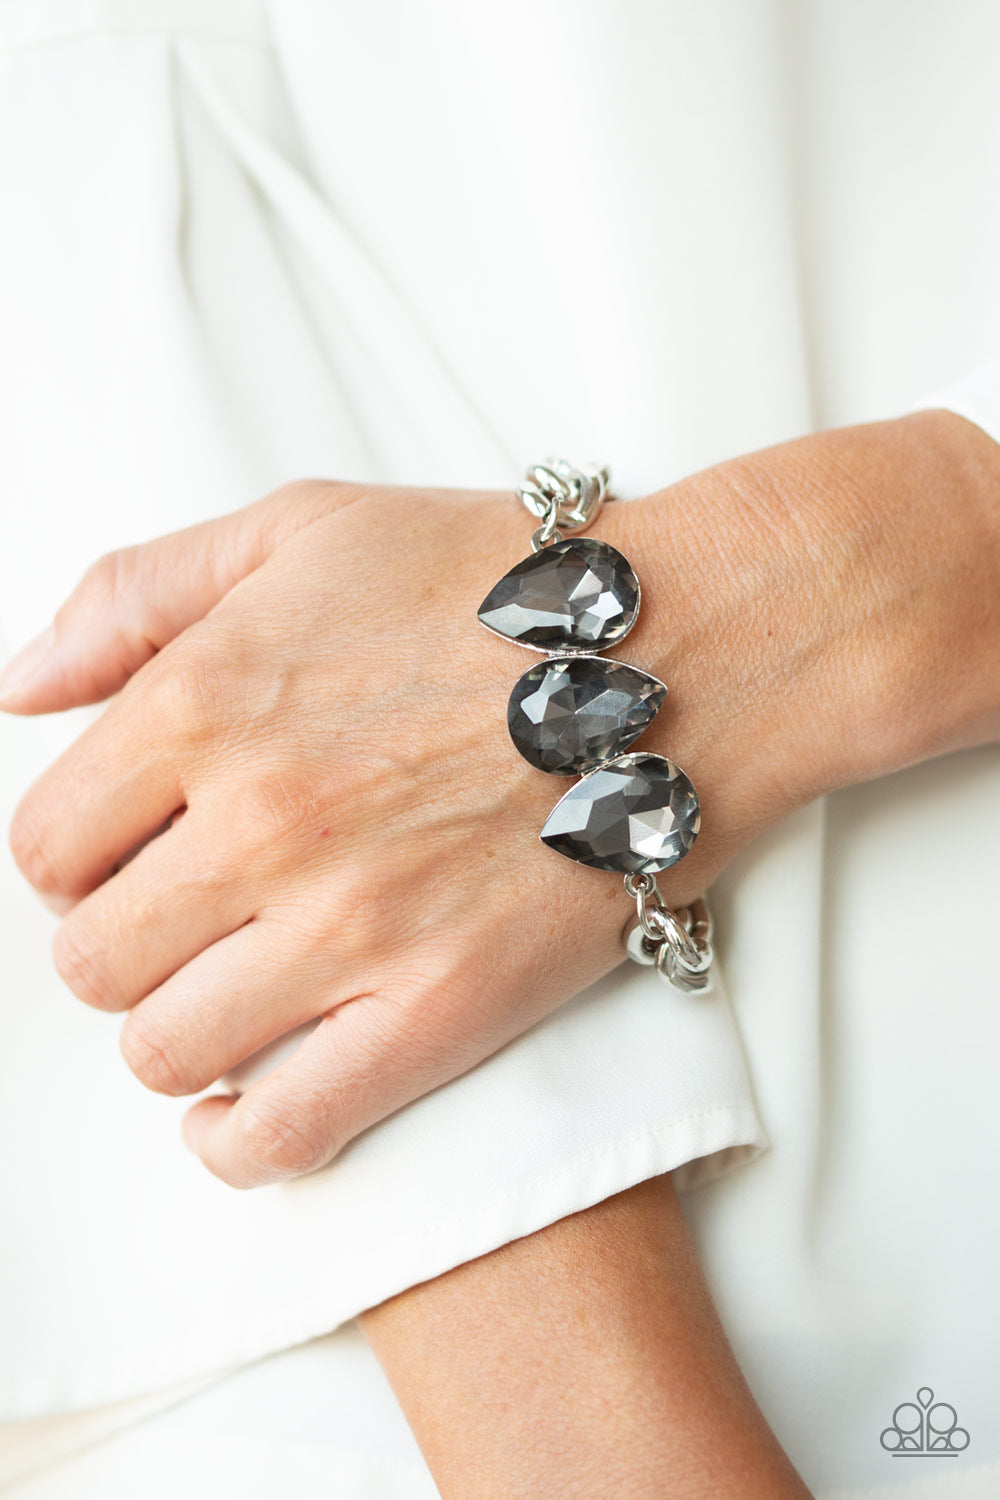 Bring Your Own Bling Silver Bracelet - Daria's Blings N Things